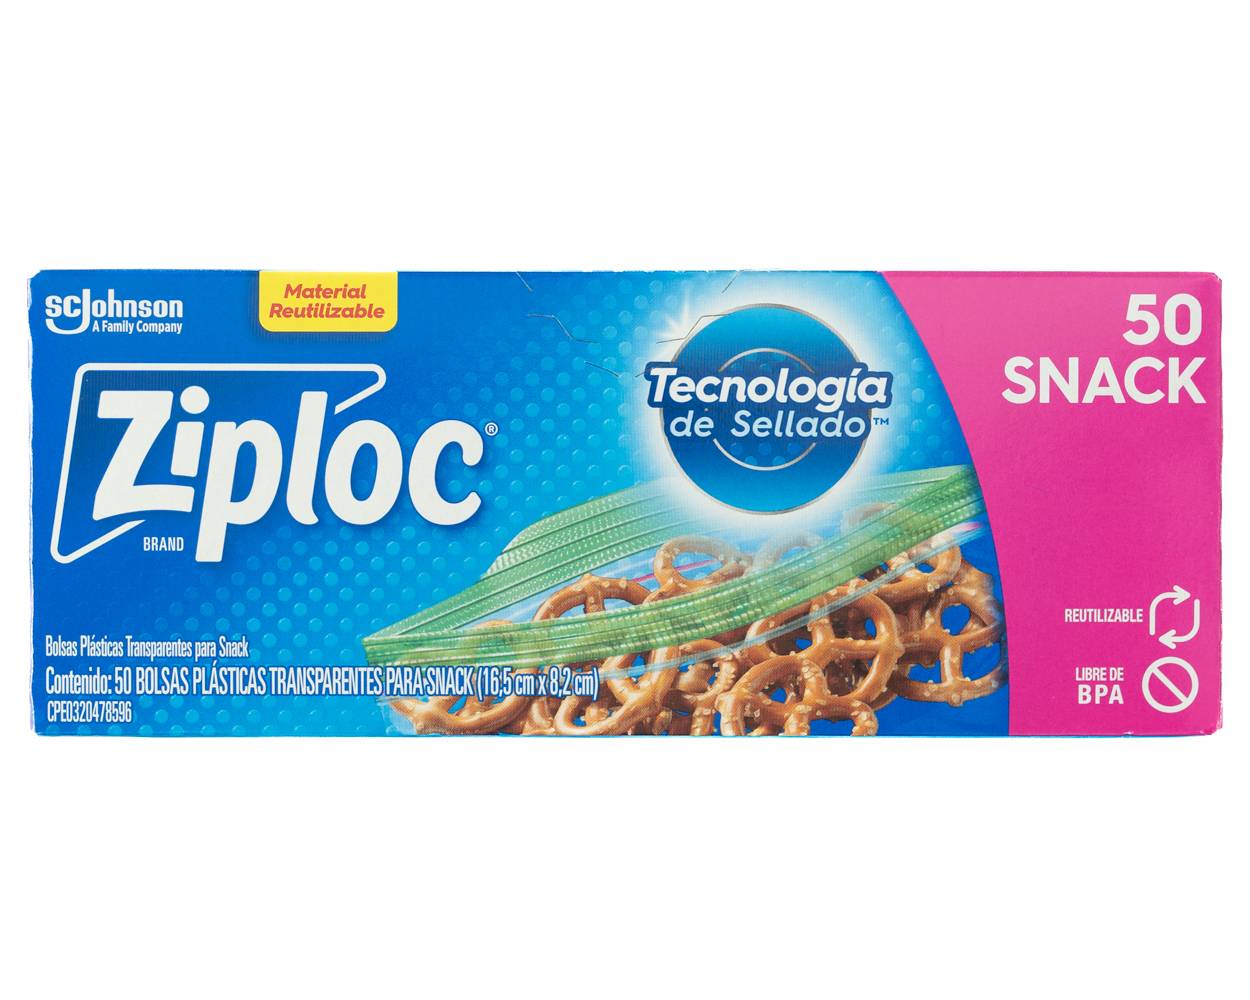 Ziploc bolsas herméticas para snack (caja 50 unids)